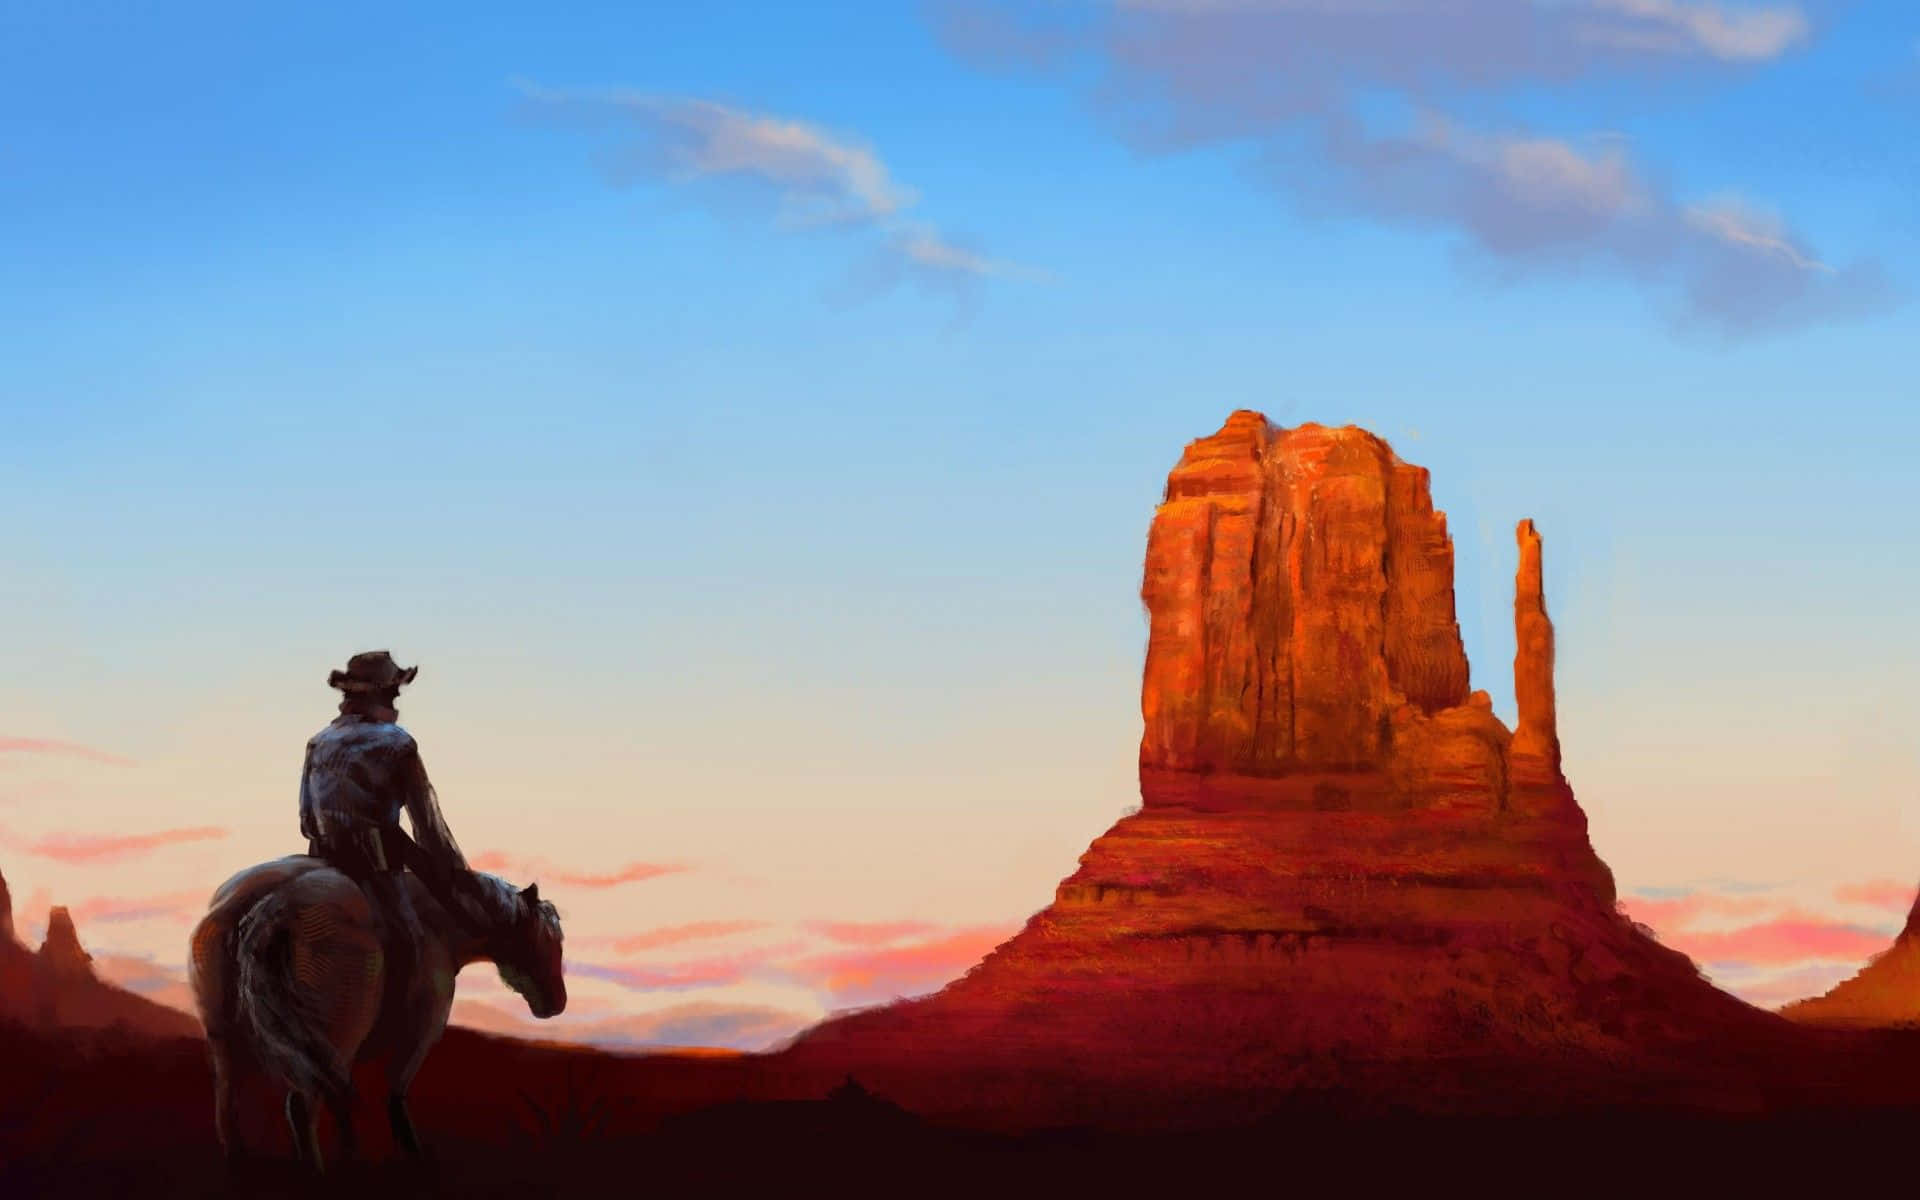 Impresionantevista De Un Vaquero En Un Paisaje Del Oeste. Fondo de pantalla